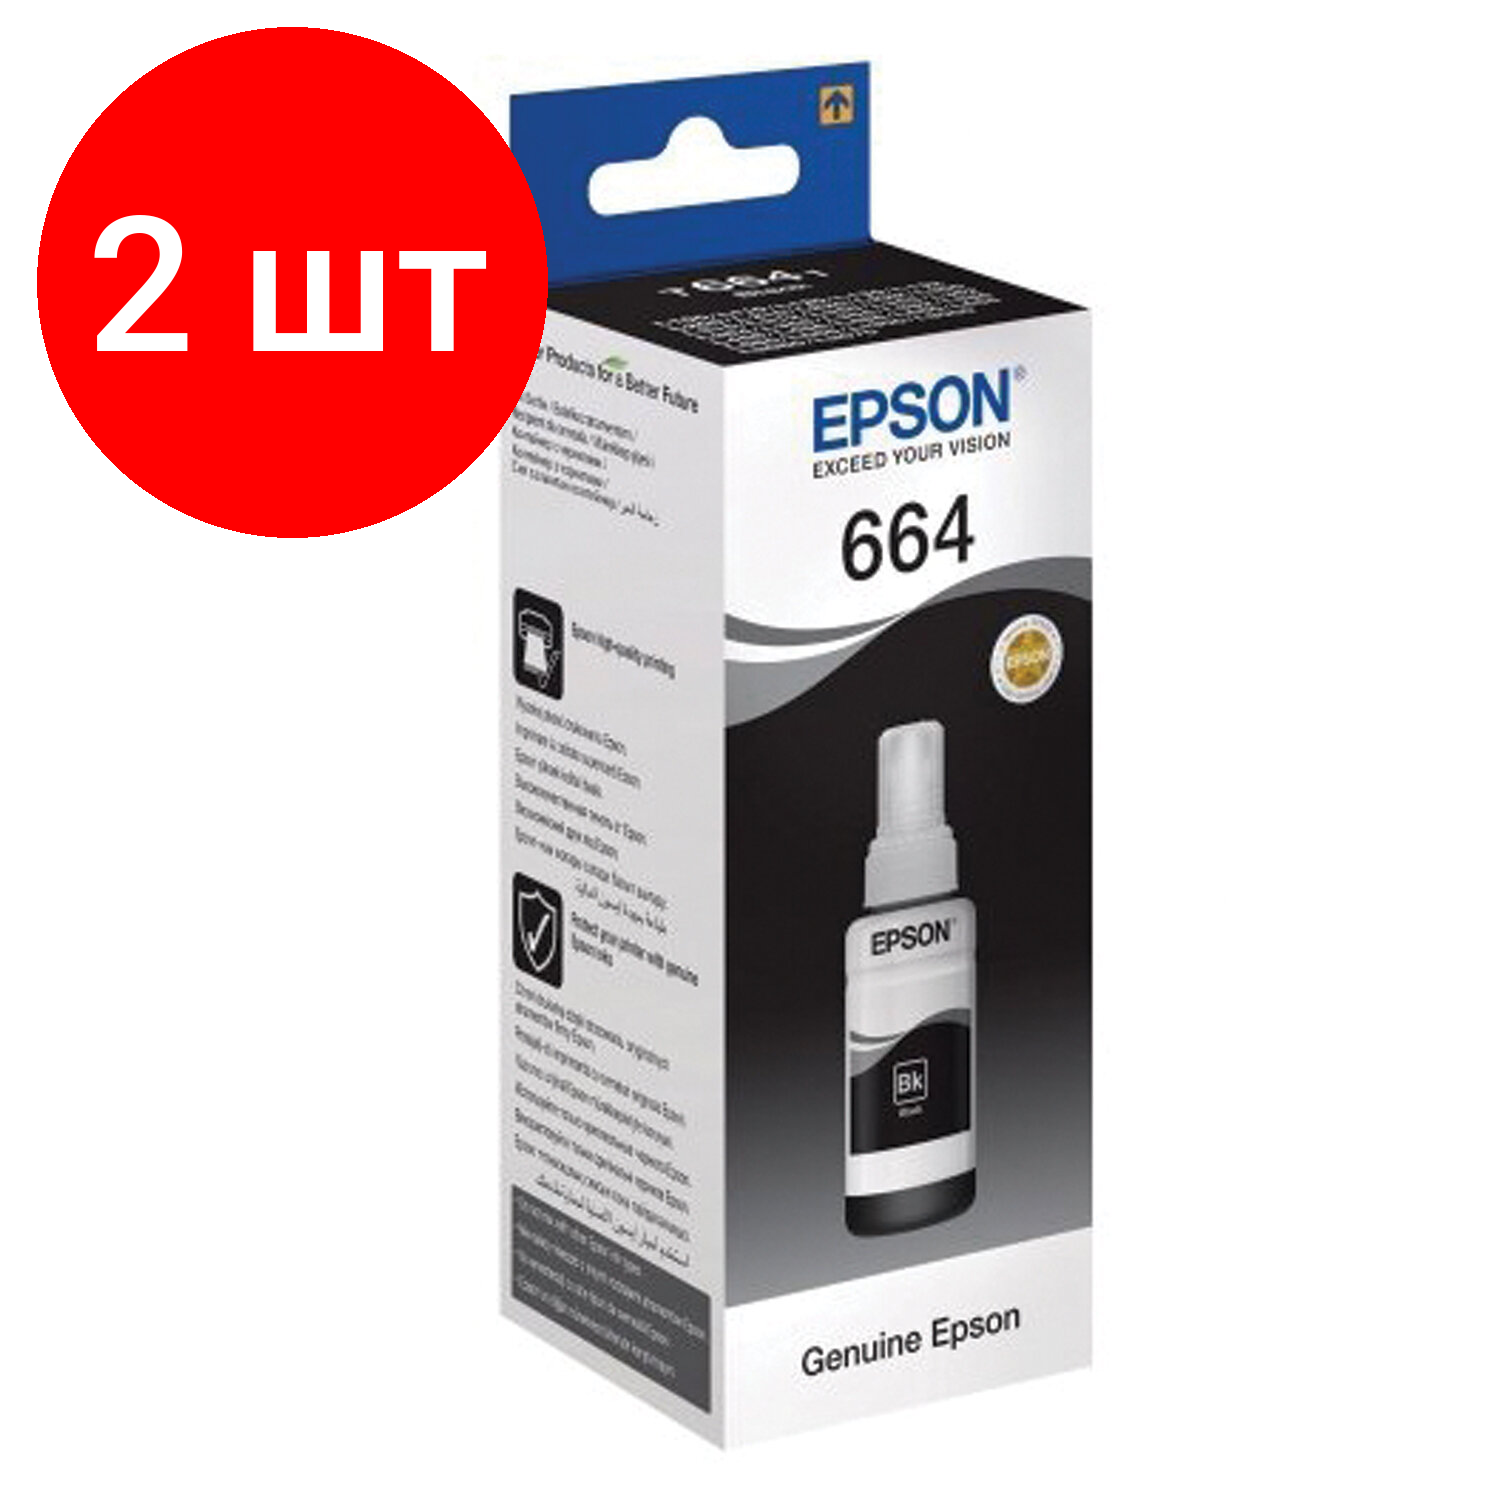 Комплект 2 шт, Чернила EPSON (C13T66414A) для СНПЧ Epson L100/L110/L200/L210/L300/L456/L550, черные, оригинальные